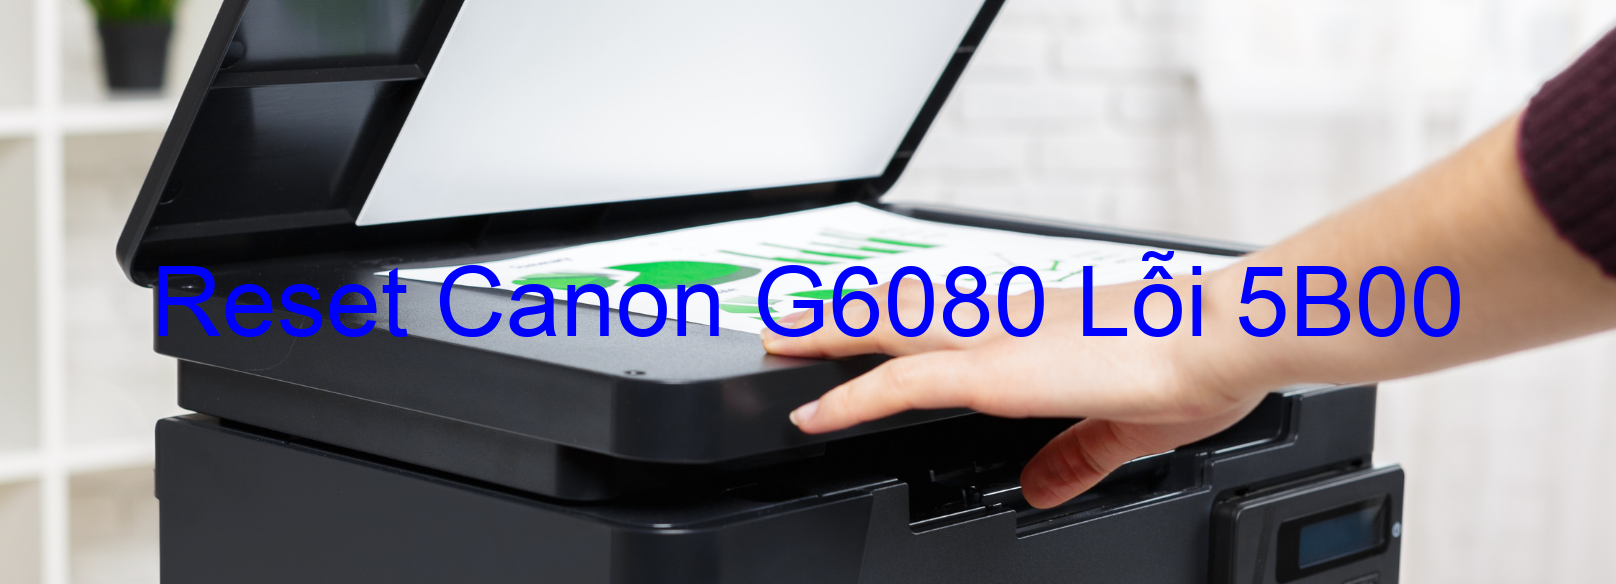 Reset Canon G6080 Lỗi 5B00